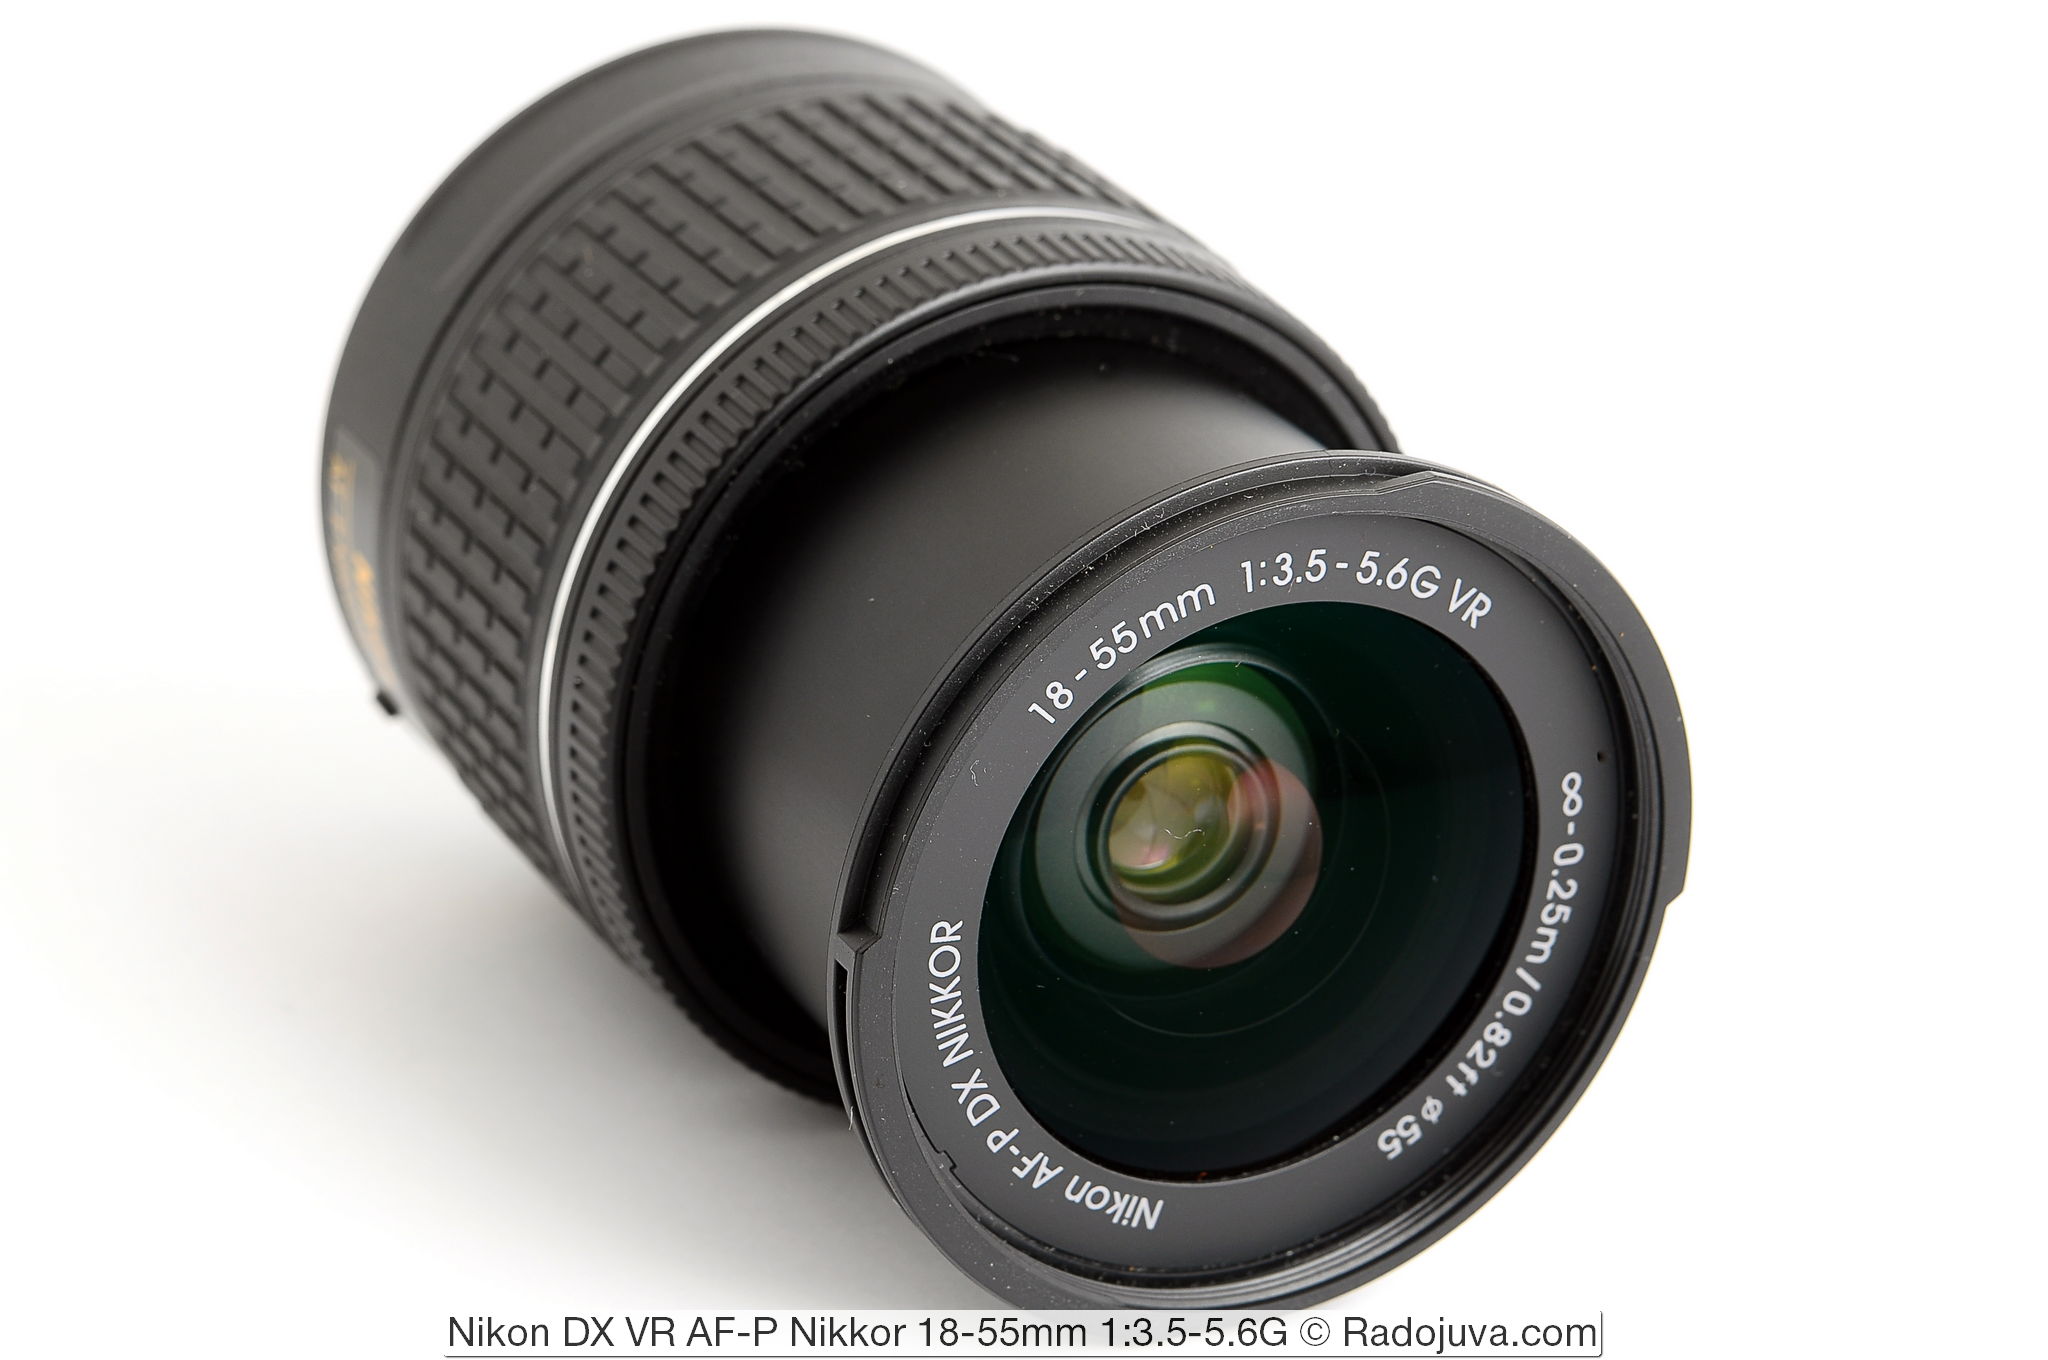 Nikon DX VR AF-P Nikkor 18-55mm 1: 3.5-5.6G lens